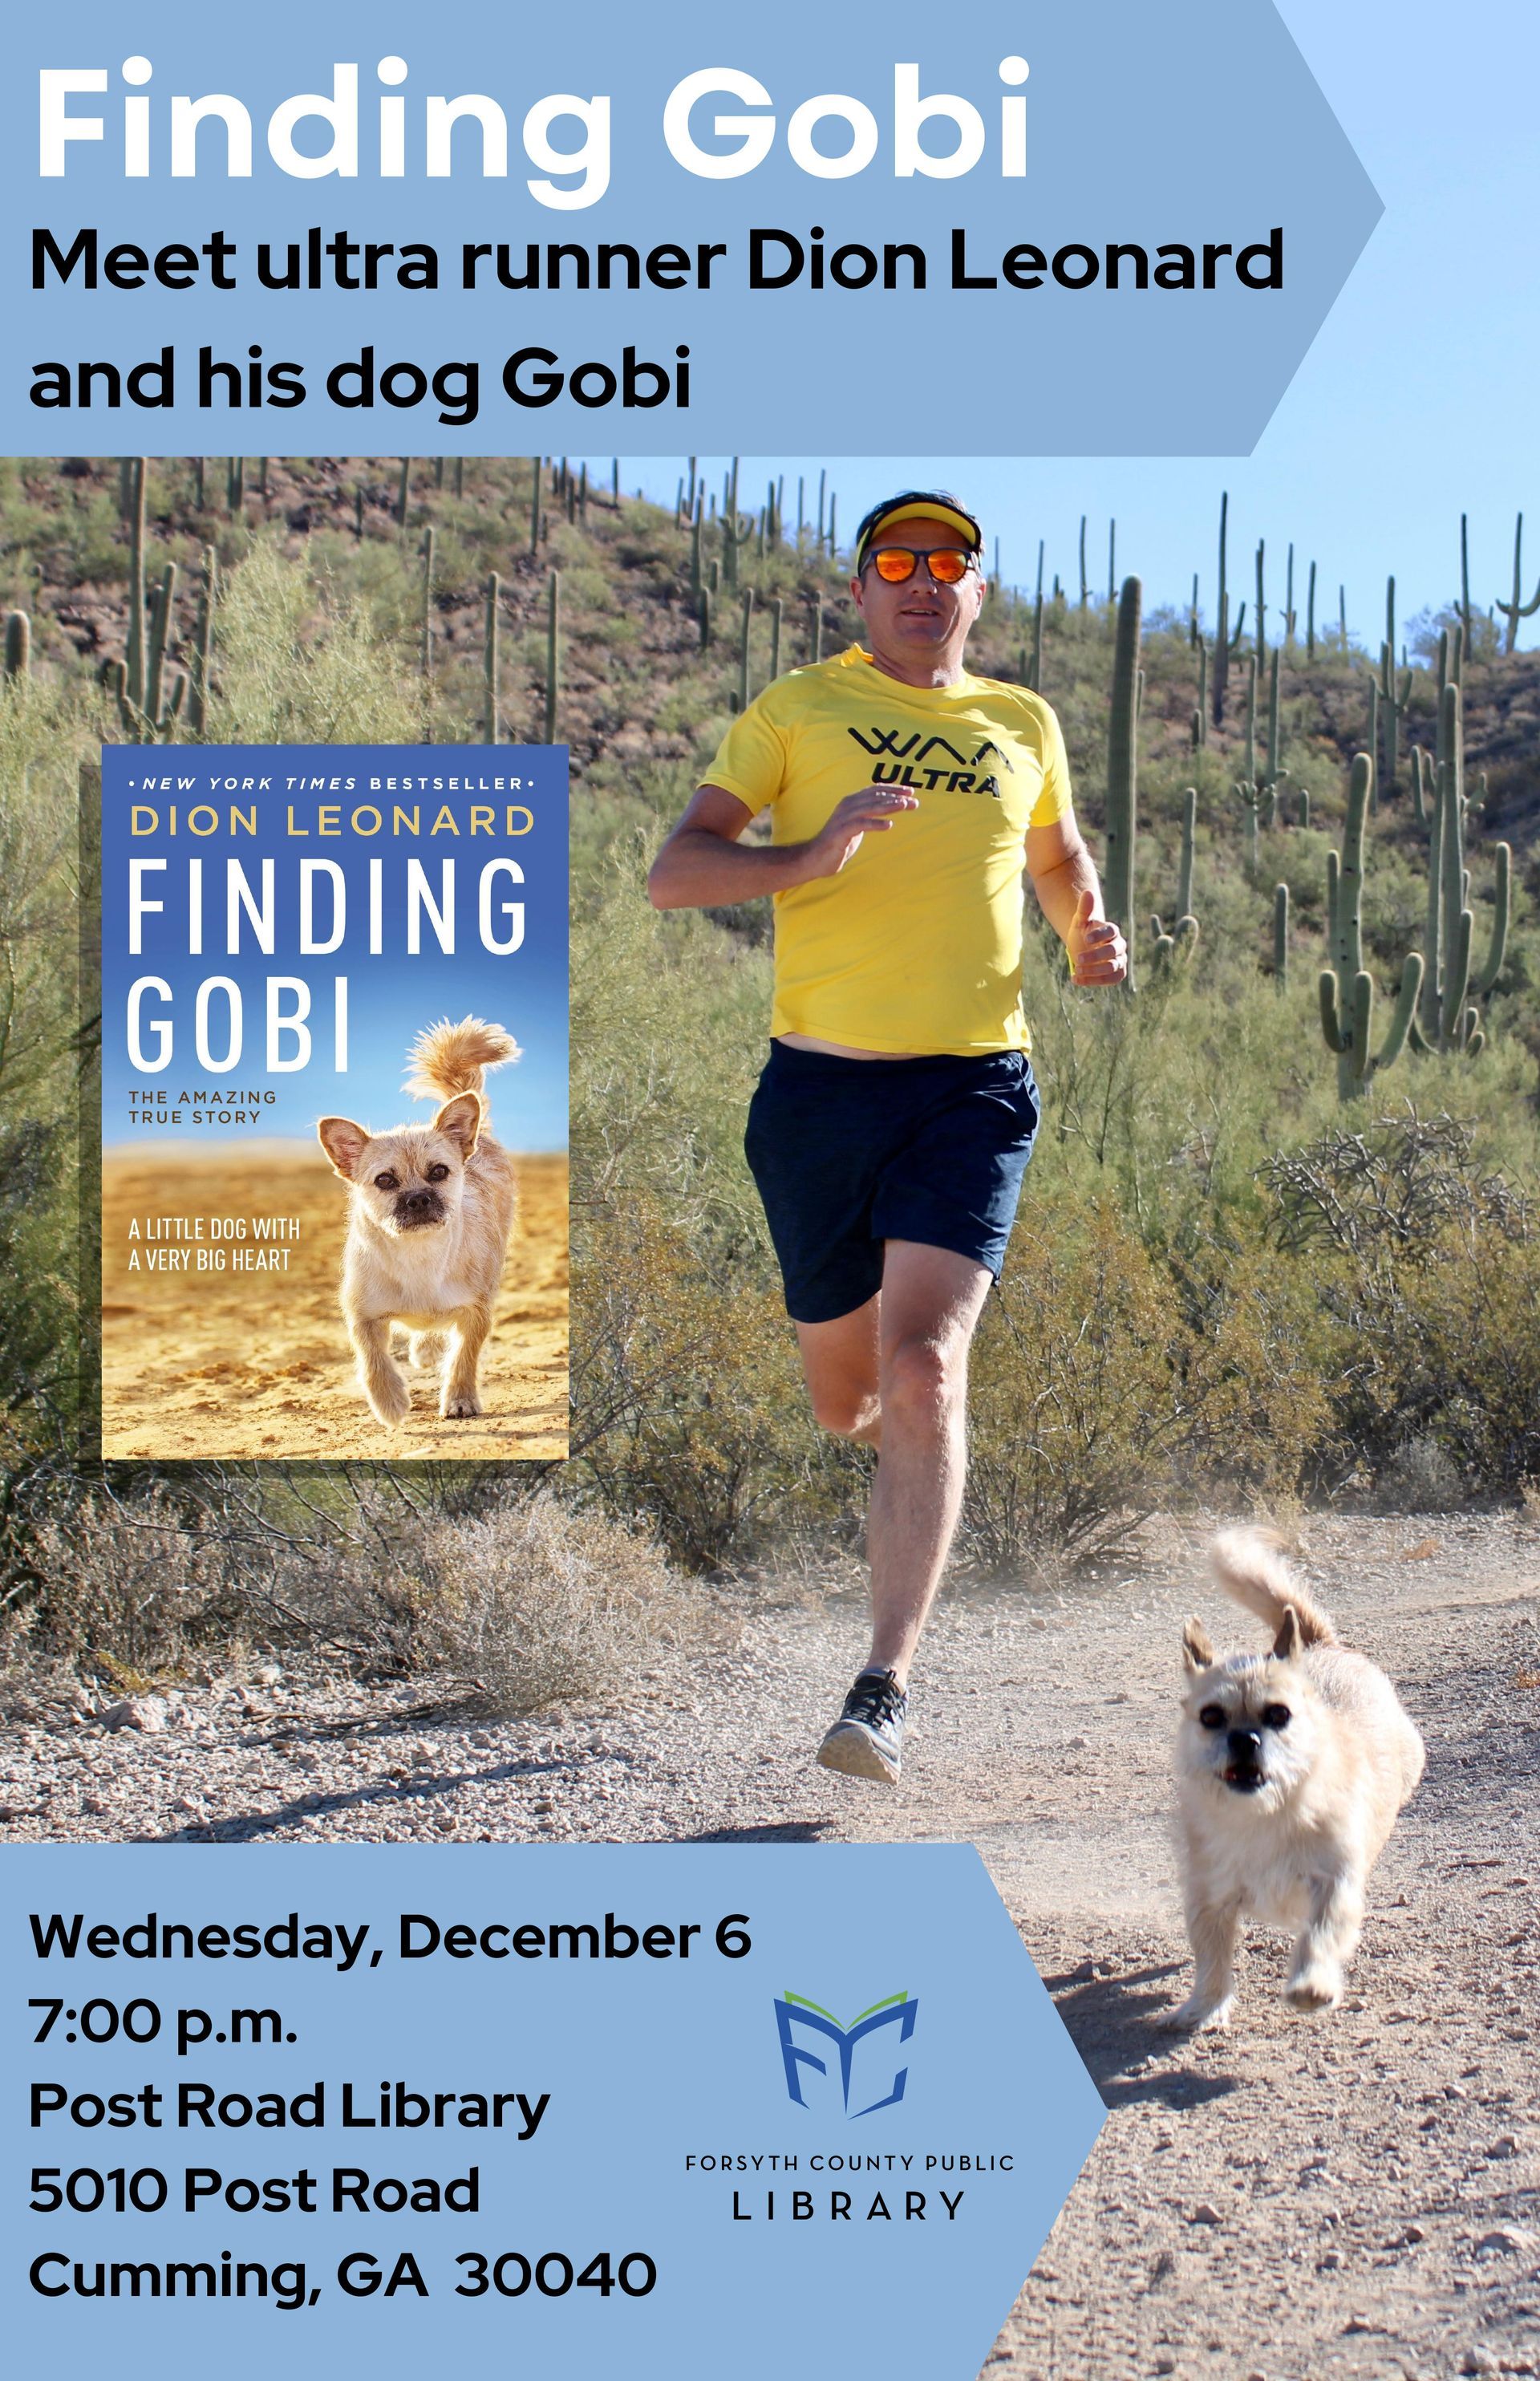 Dion Leonard, Inspirational speaker, Finding Gobi, New York Times Bestseller, Gobi, Dog